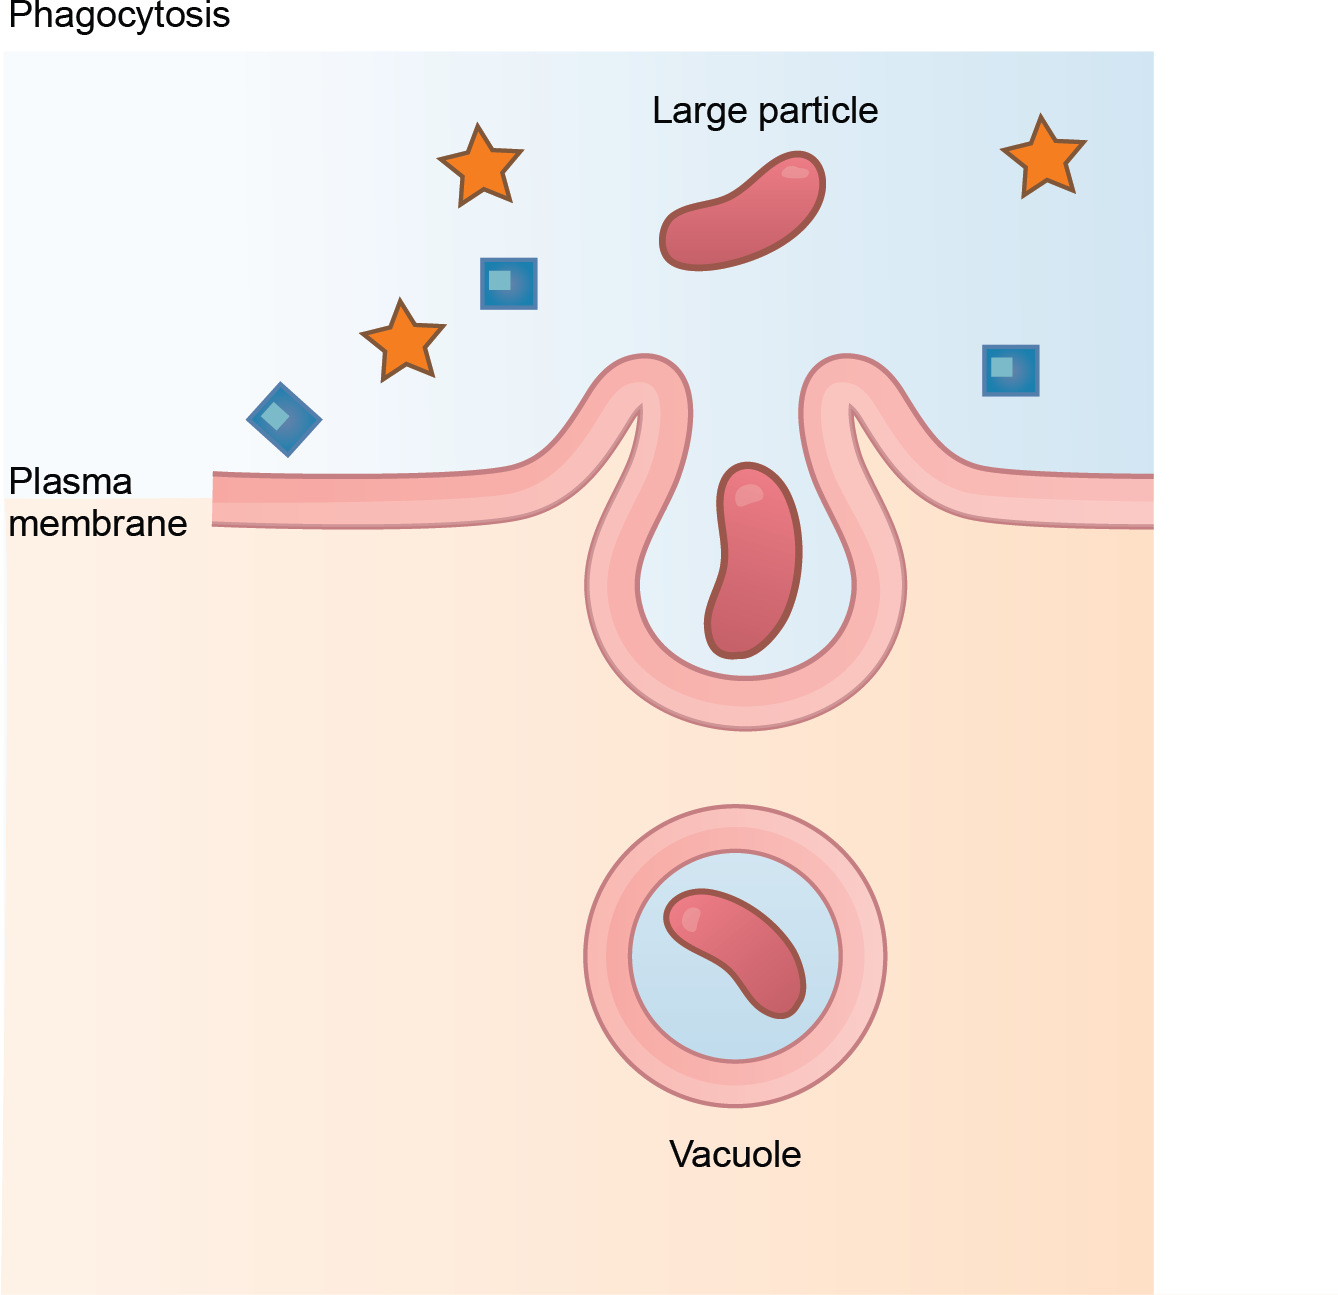 A diagram of phagocytosis